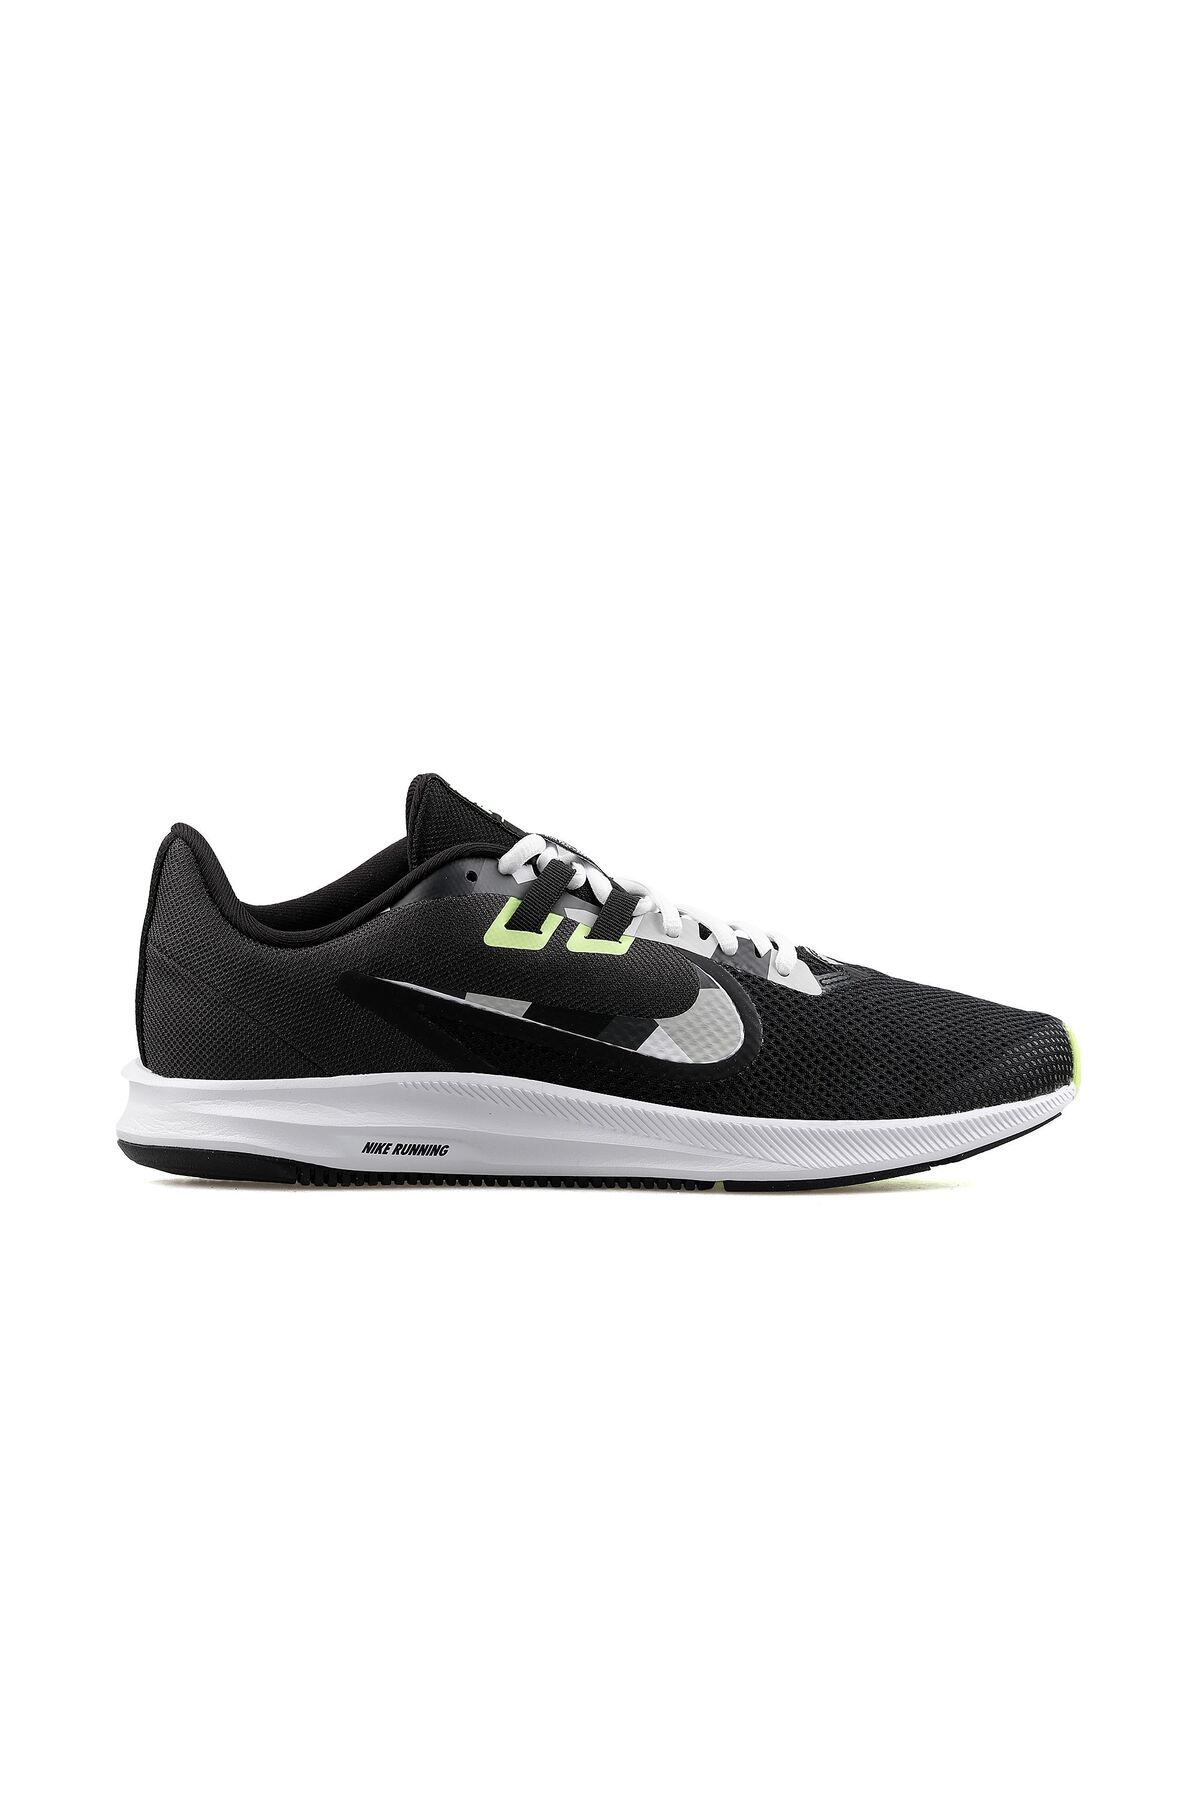 Nike Downshifter 9 Aq7481-012 Spor Ayakkabı Siyah